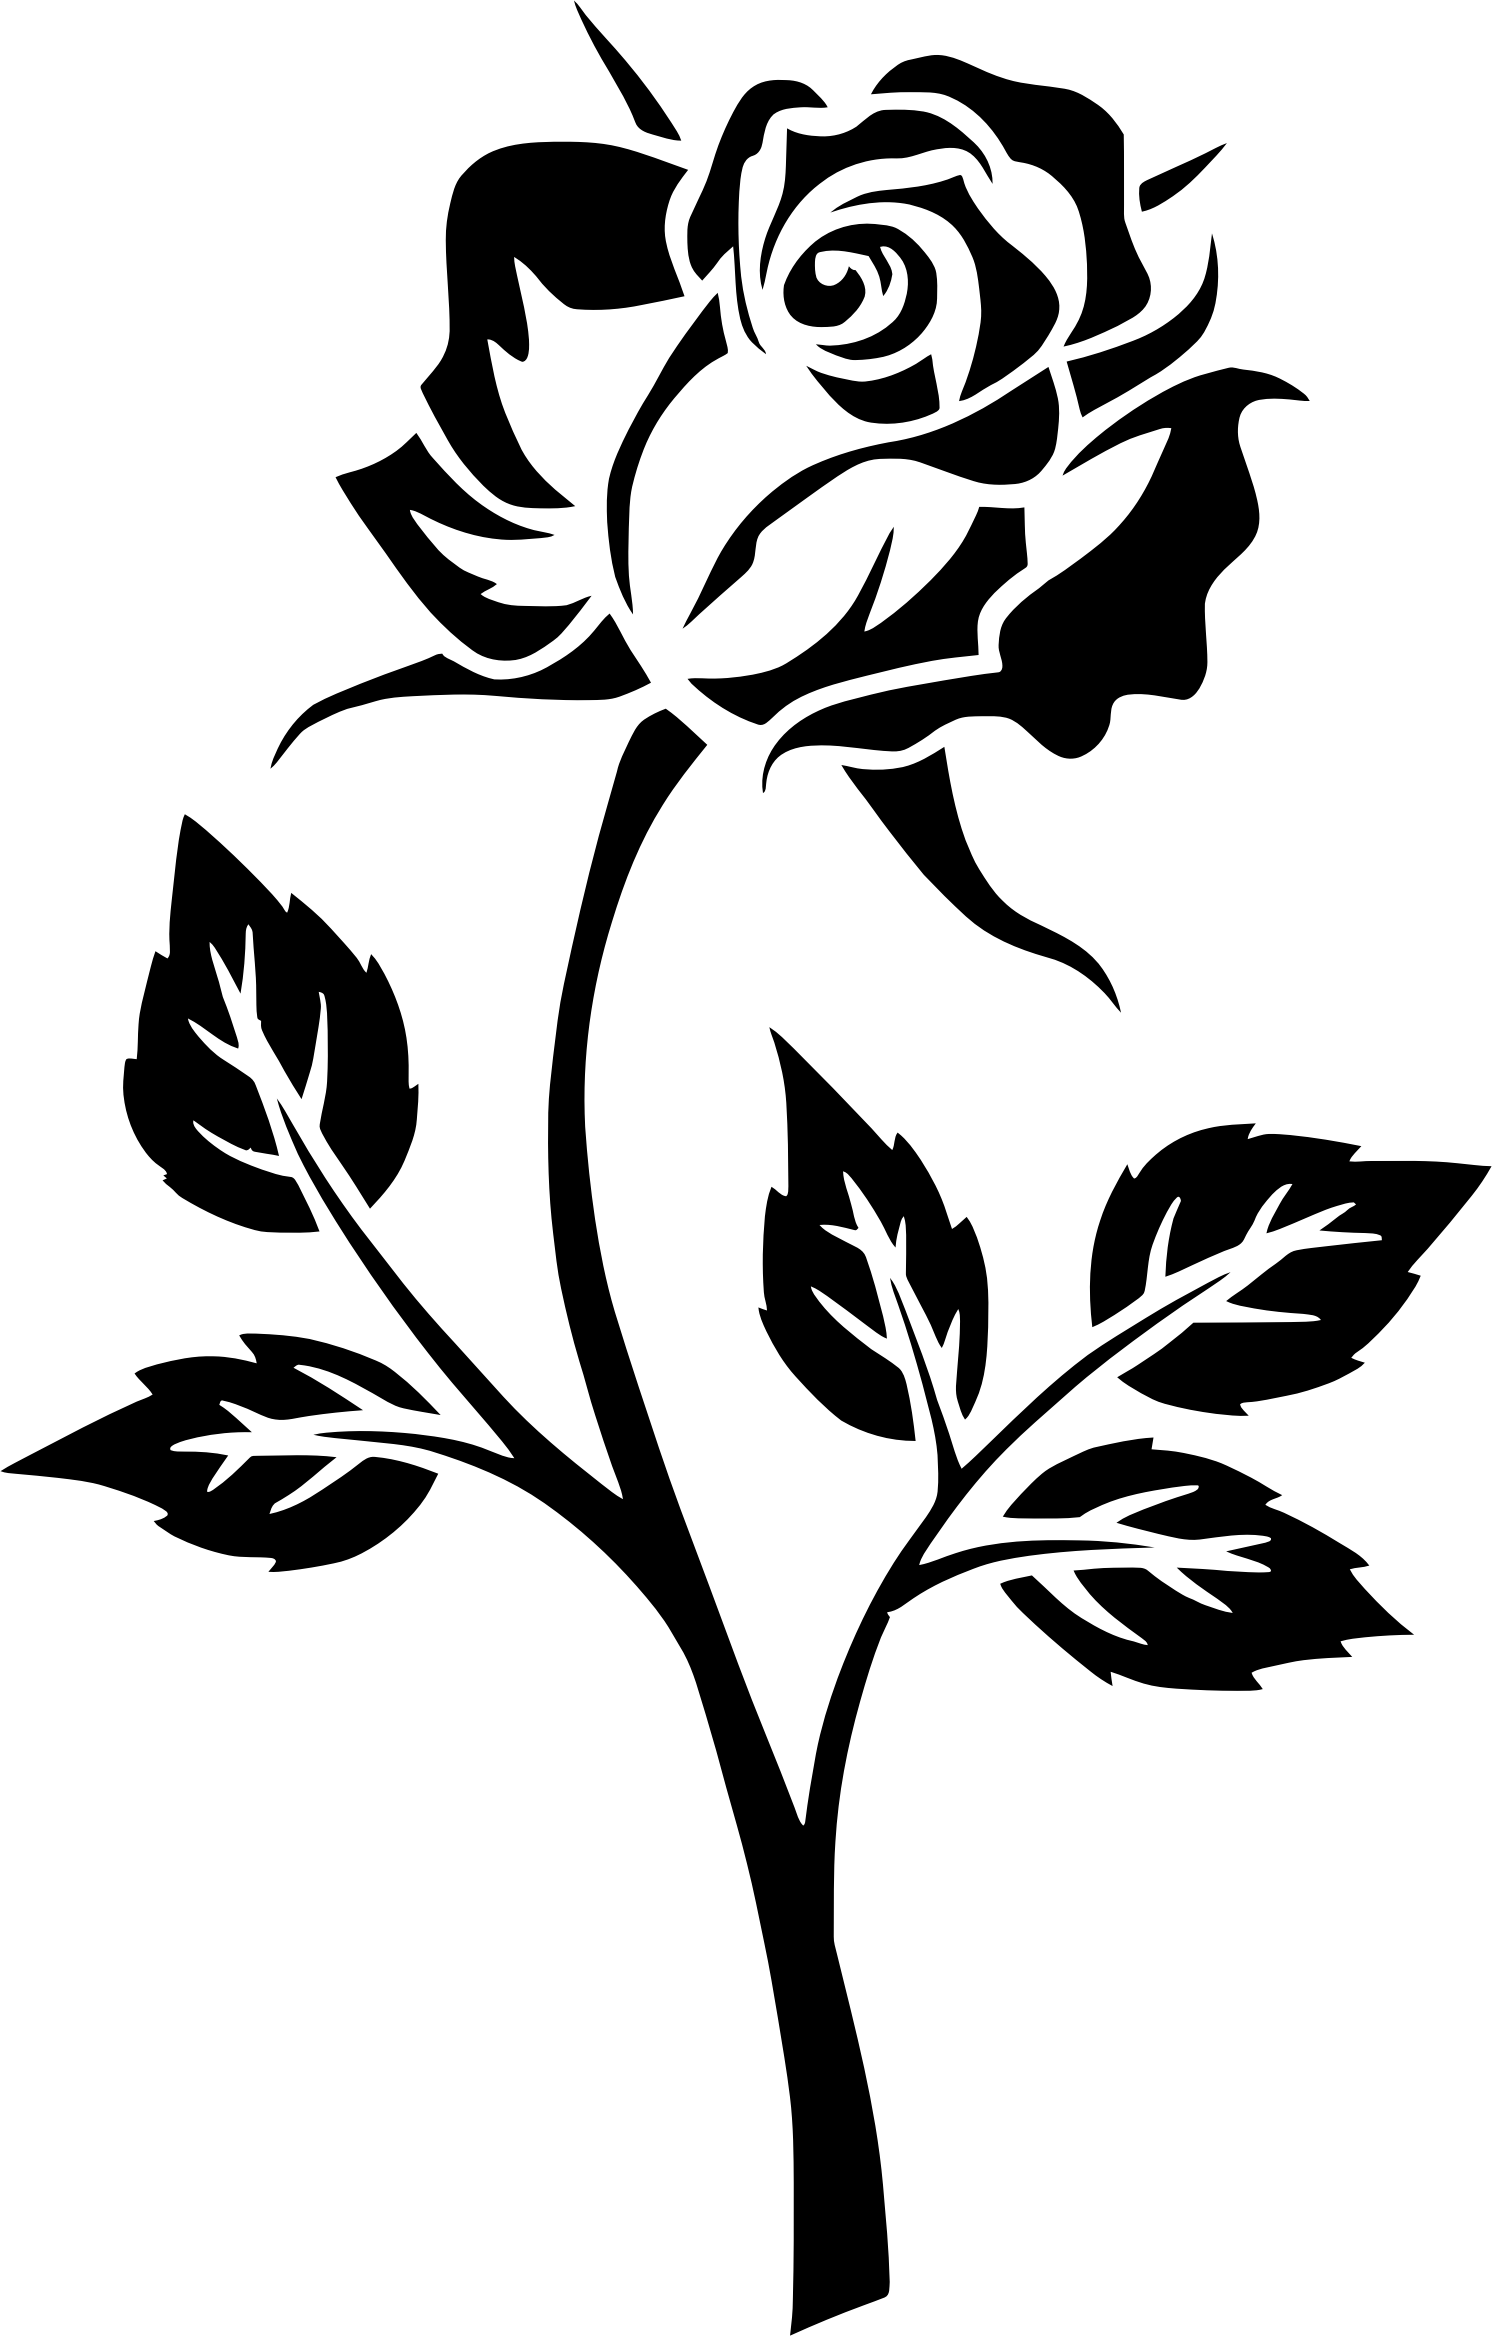 Immagine del PNG della rosa in bianco e nero